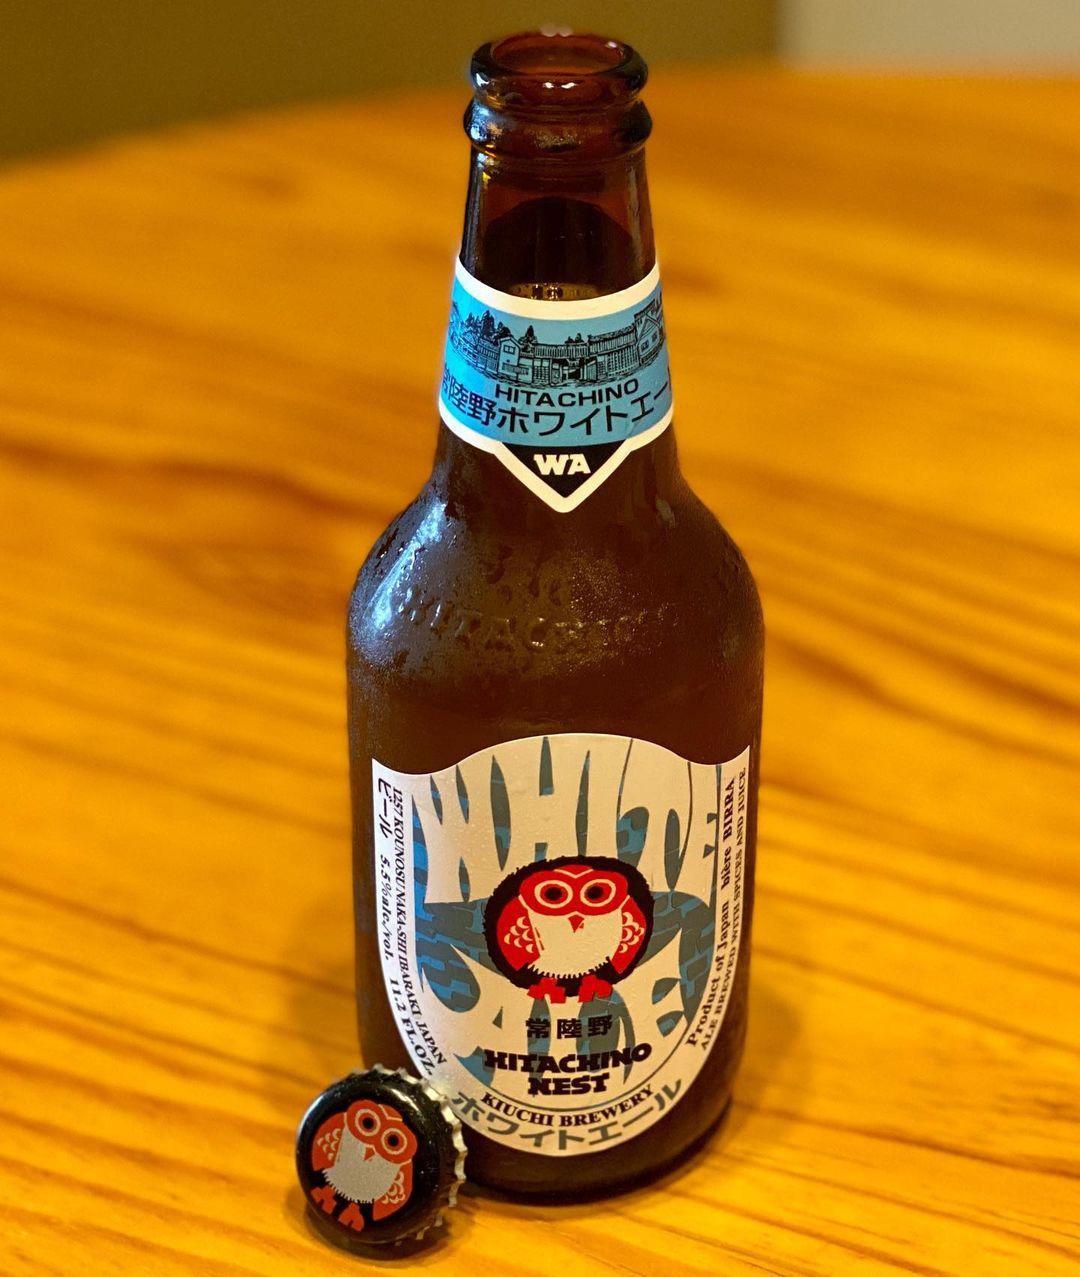 japanese beer brands - hitachino nest